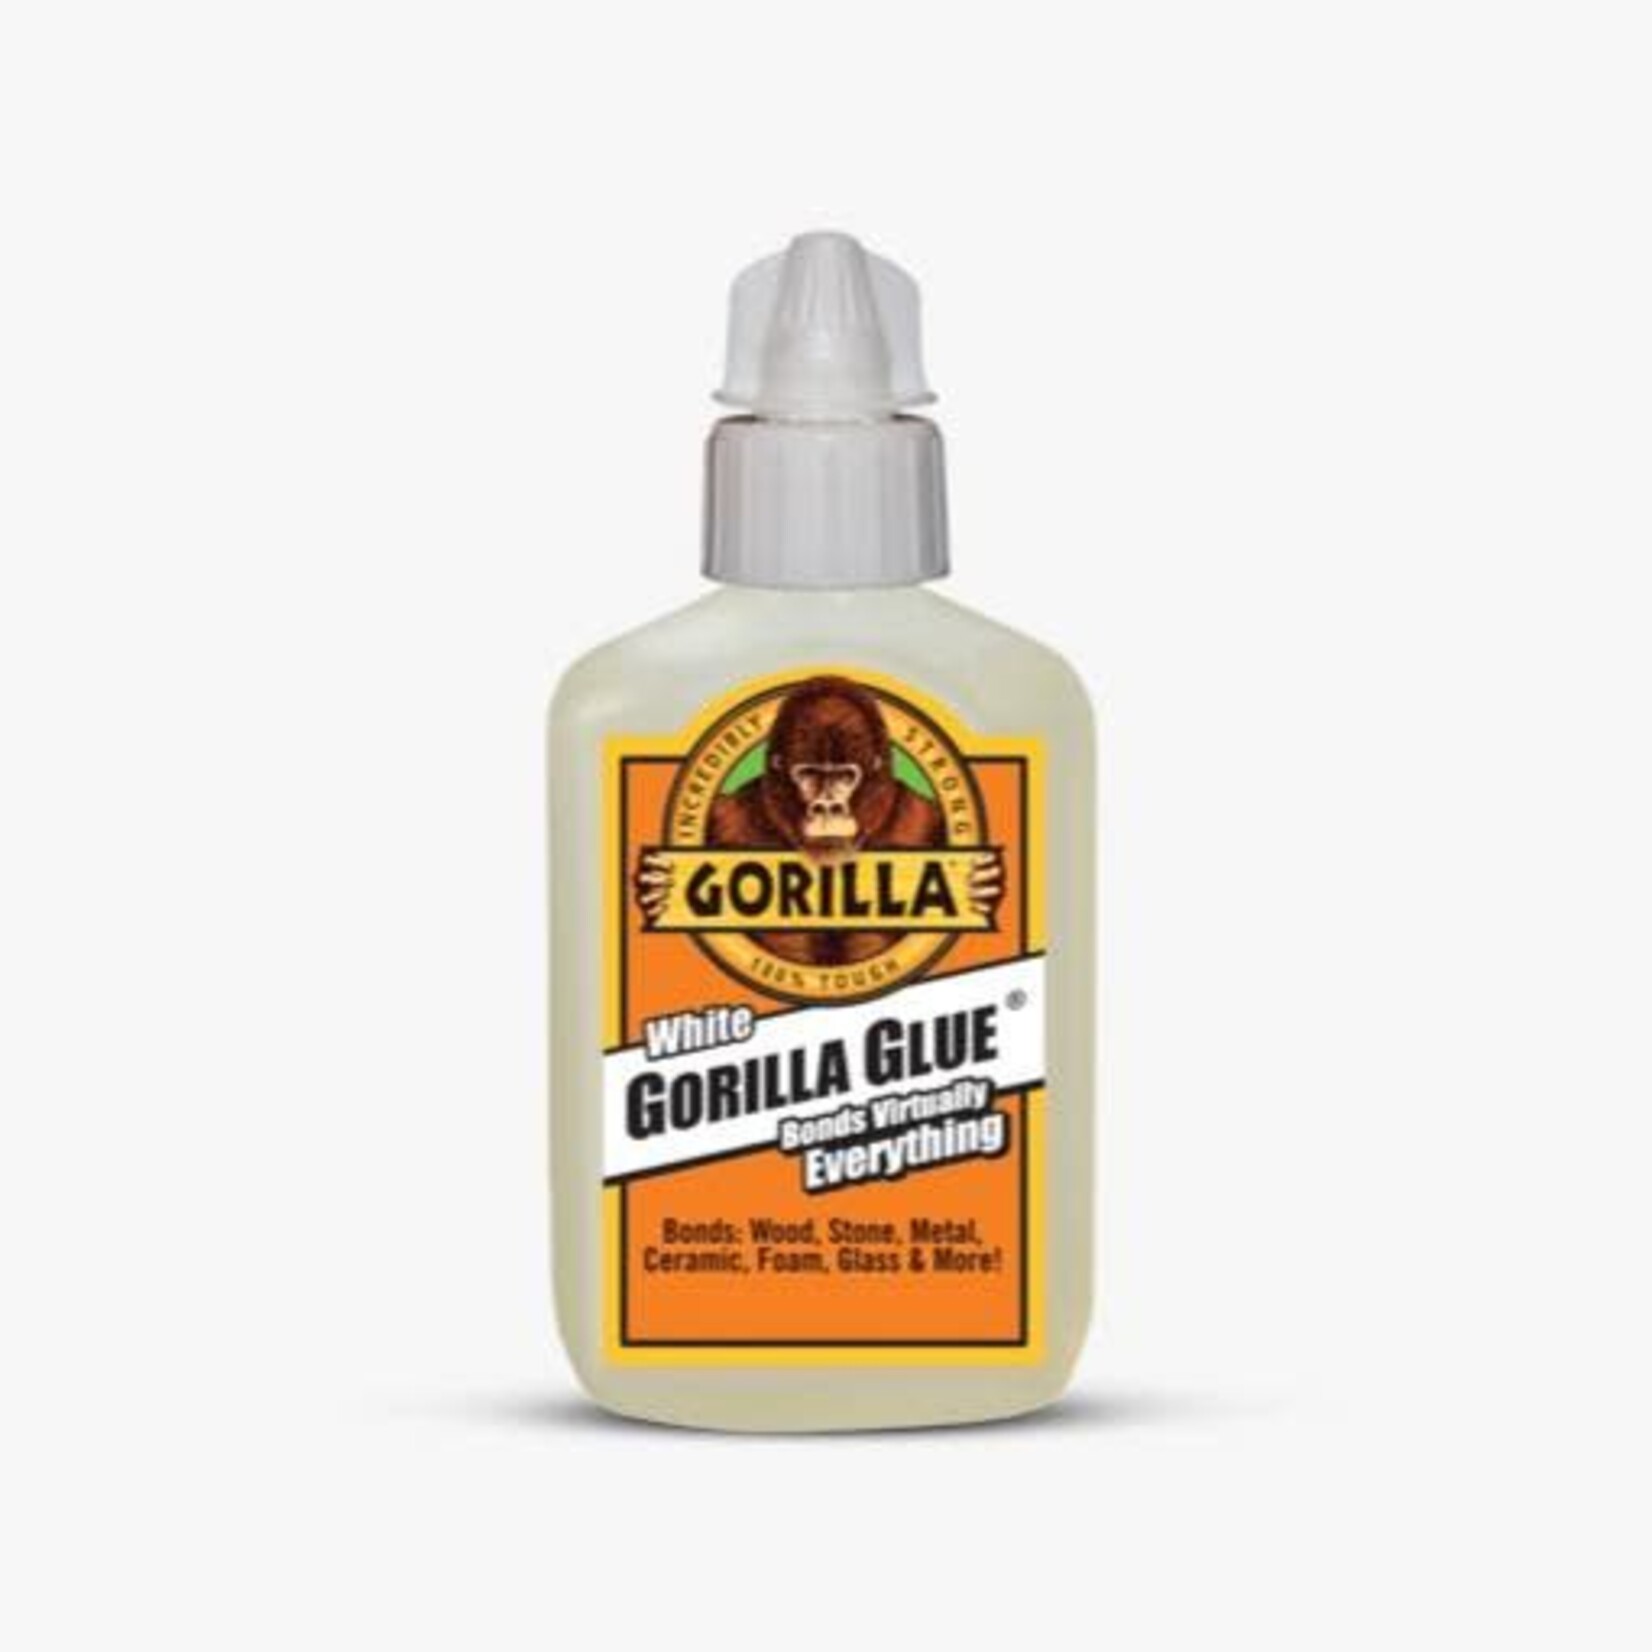 White Gorilla Glue 2oz